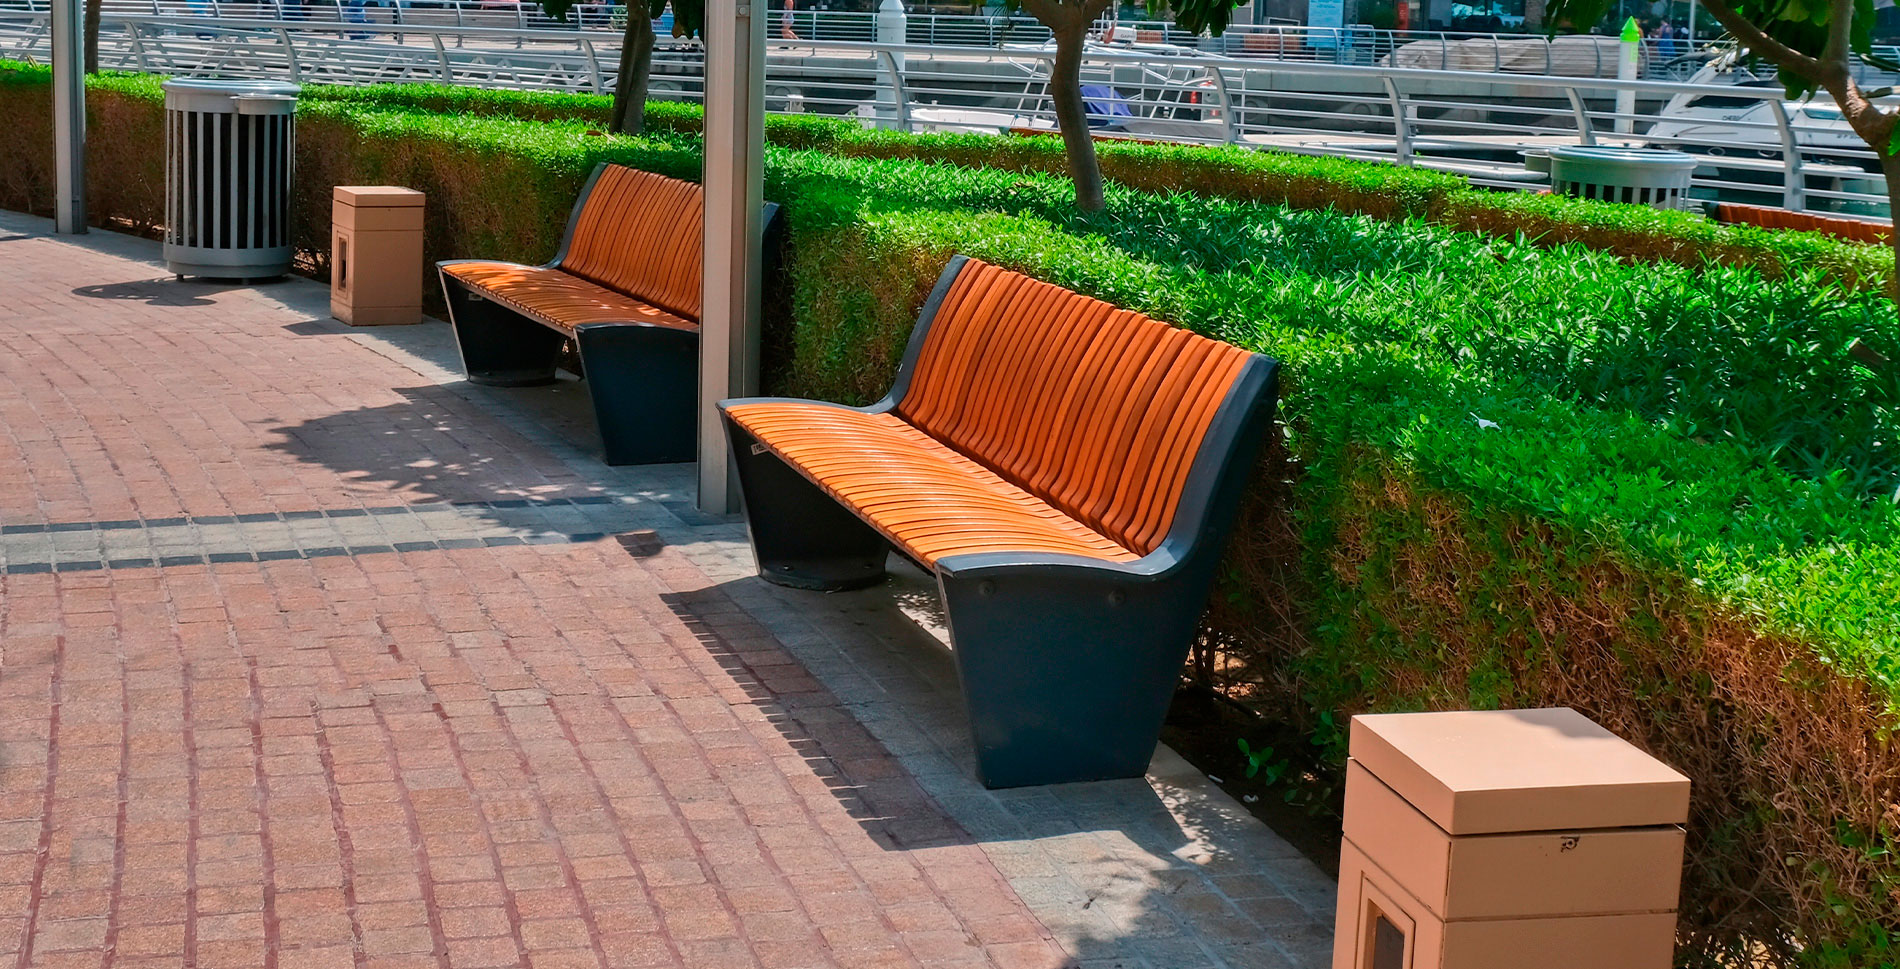 Funcional, sostenible y de diseño: así debe ser el mobiliario urbano